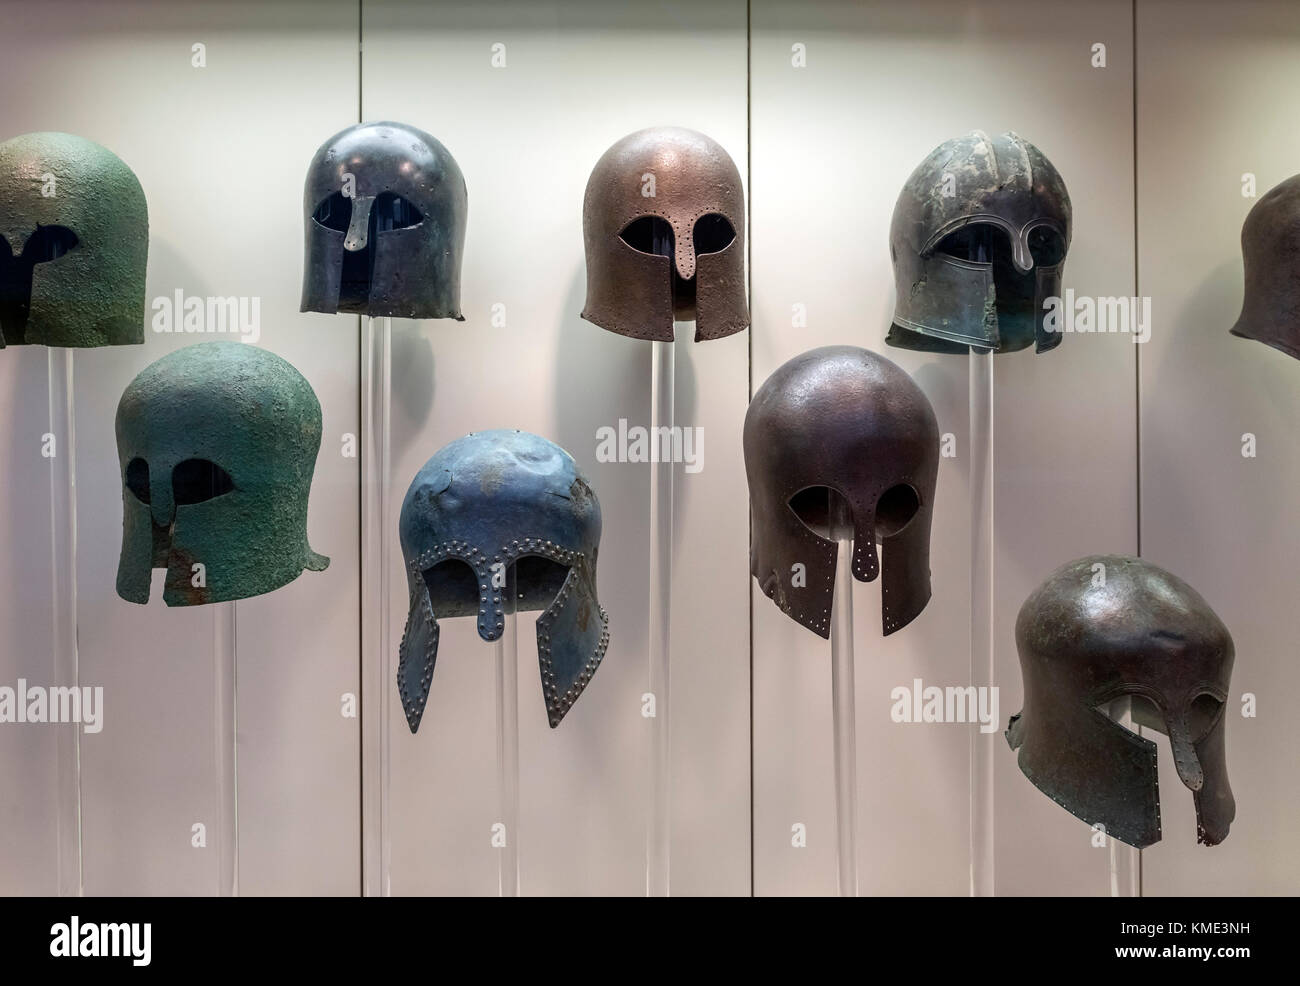 Anzeige der bronze Korinthischen Helm aus der Zeit um das 6. bis 8. Jahrhundert v. Chr., das Archäologische Museum von Olympia, Olympia, Pelopponese, Griechenland Stockfoto